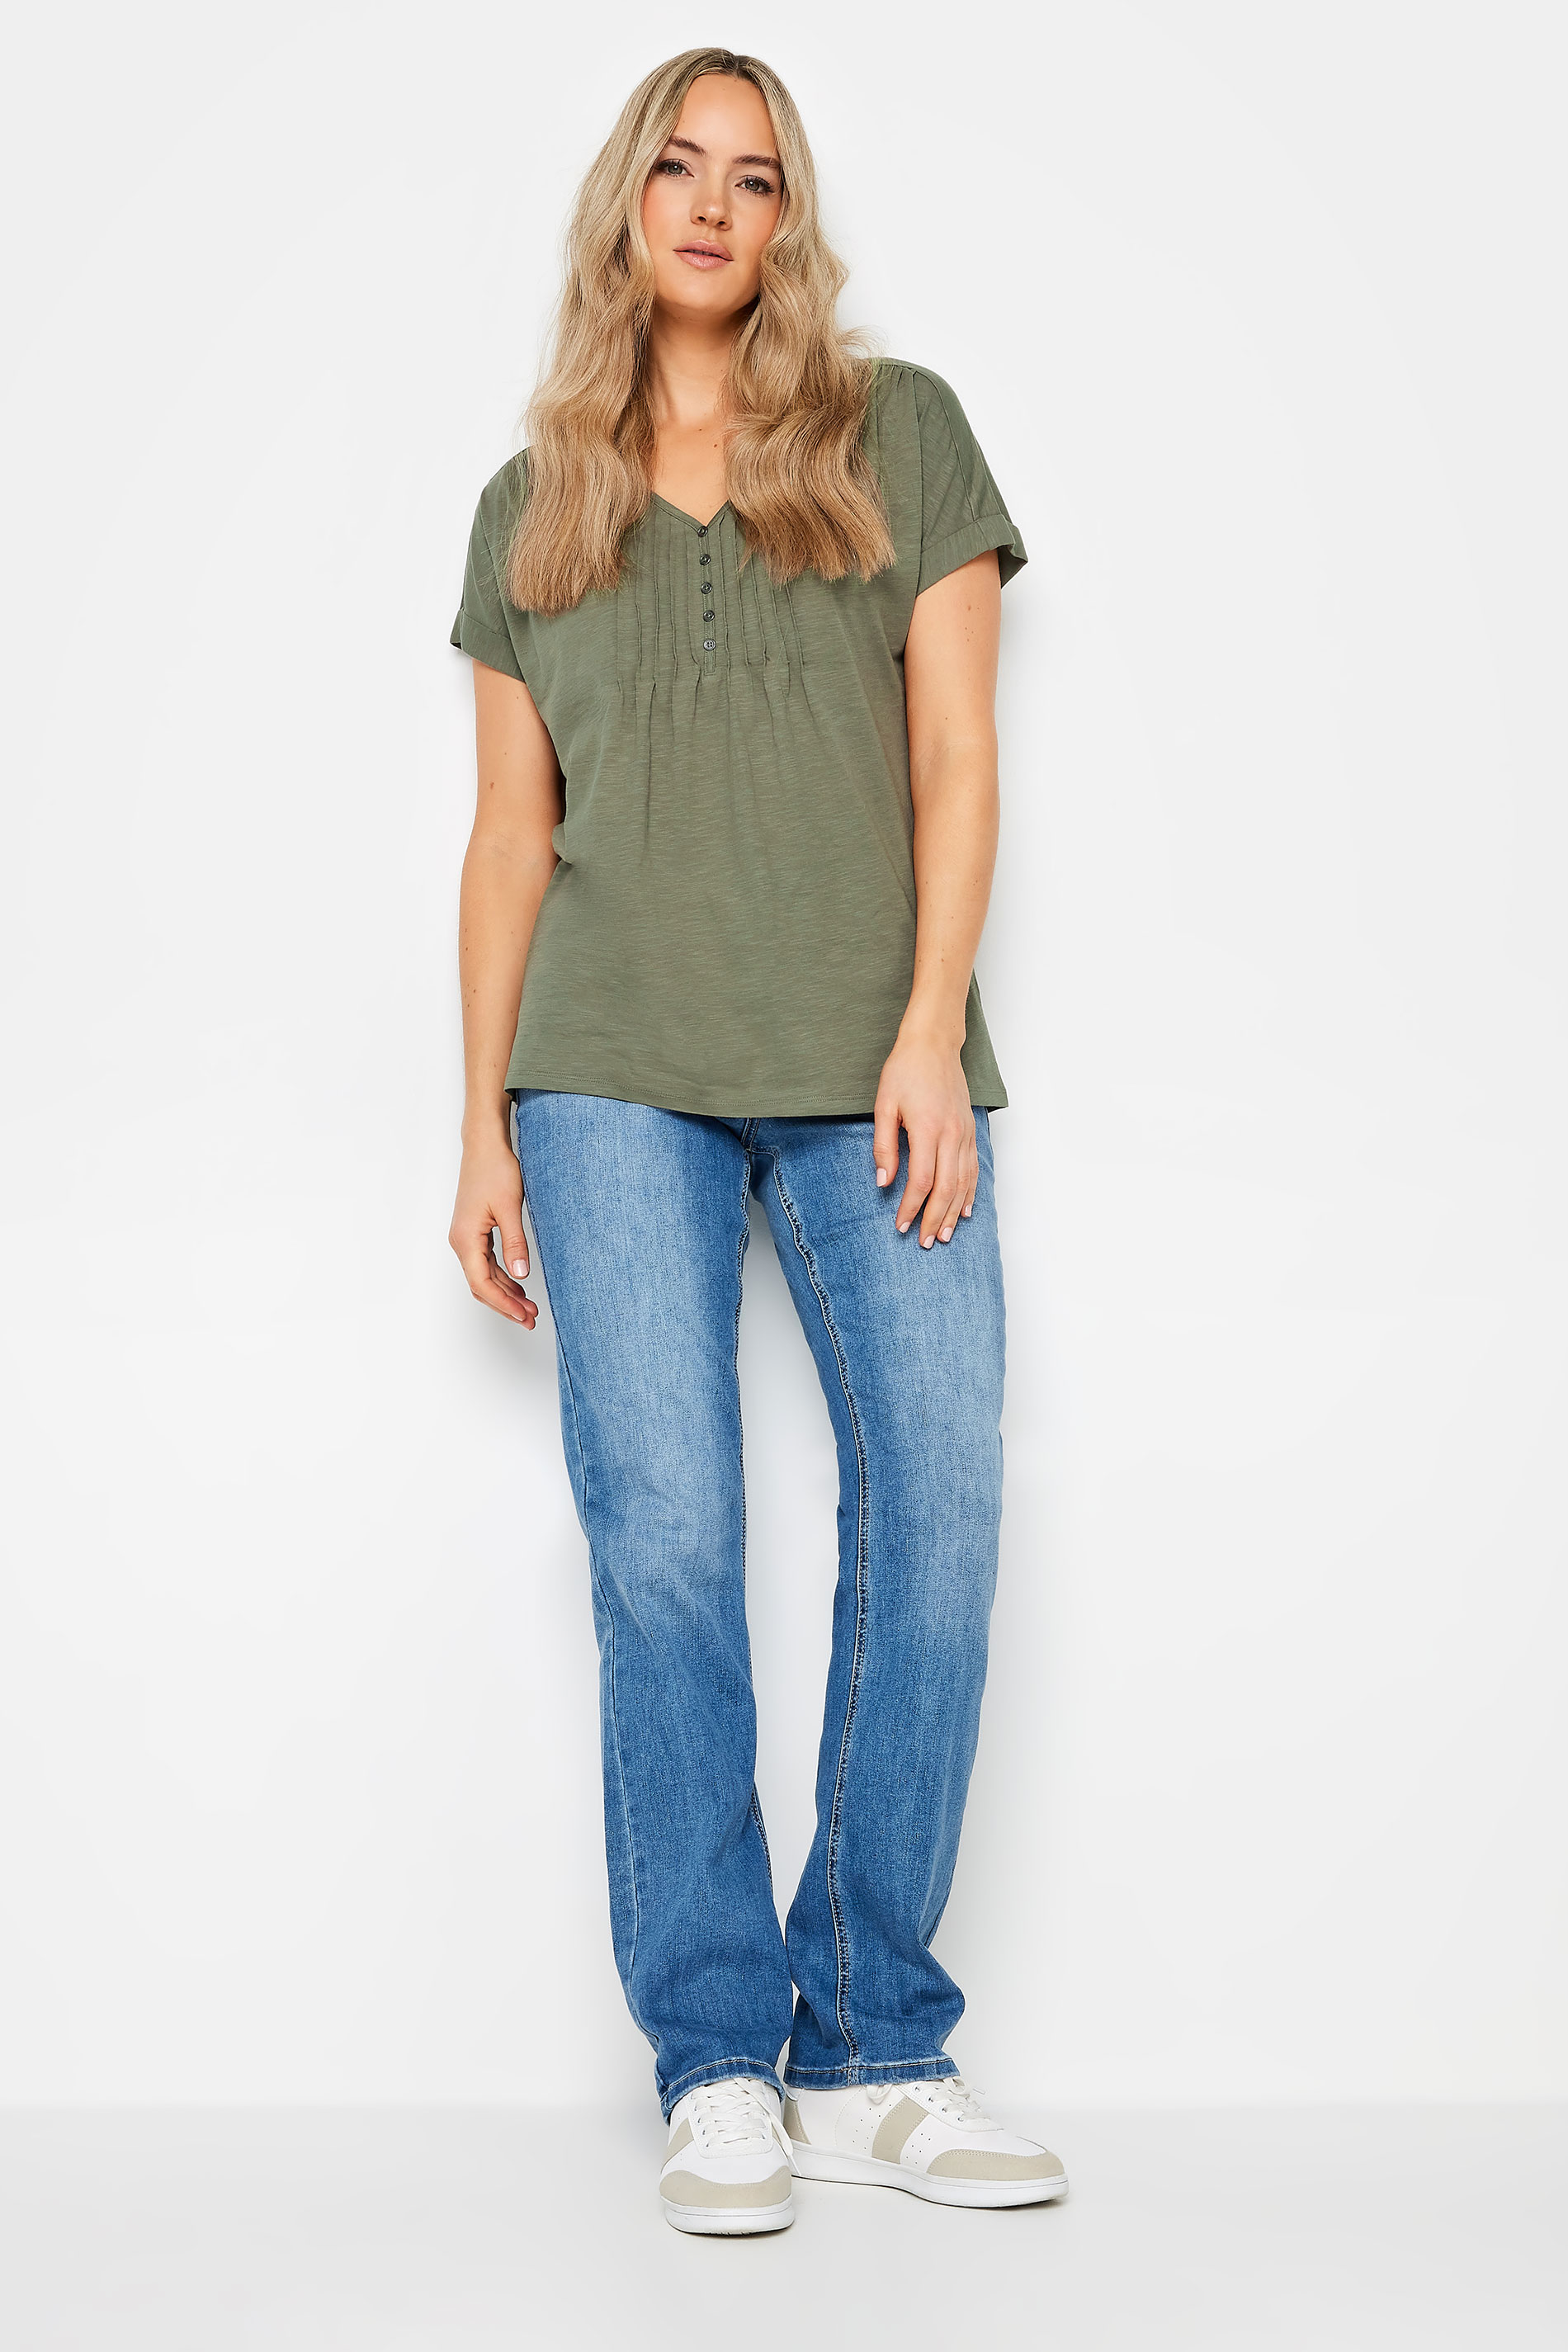 LTS Tall Women's Khaki Green Cotton Henley T-Shirt | Long Tall Sally 2